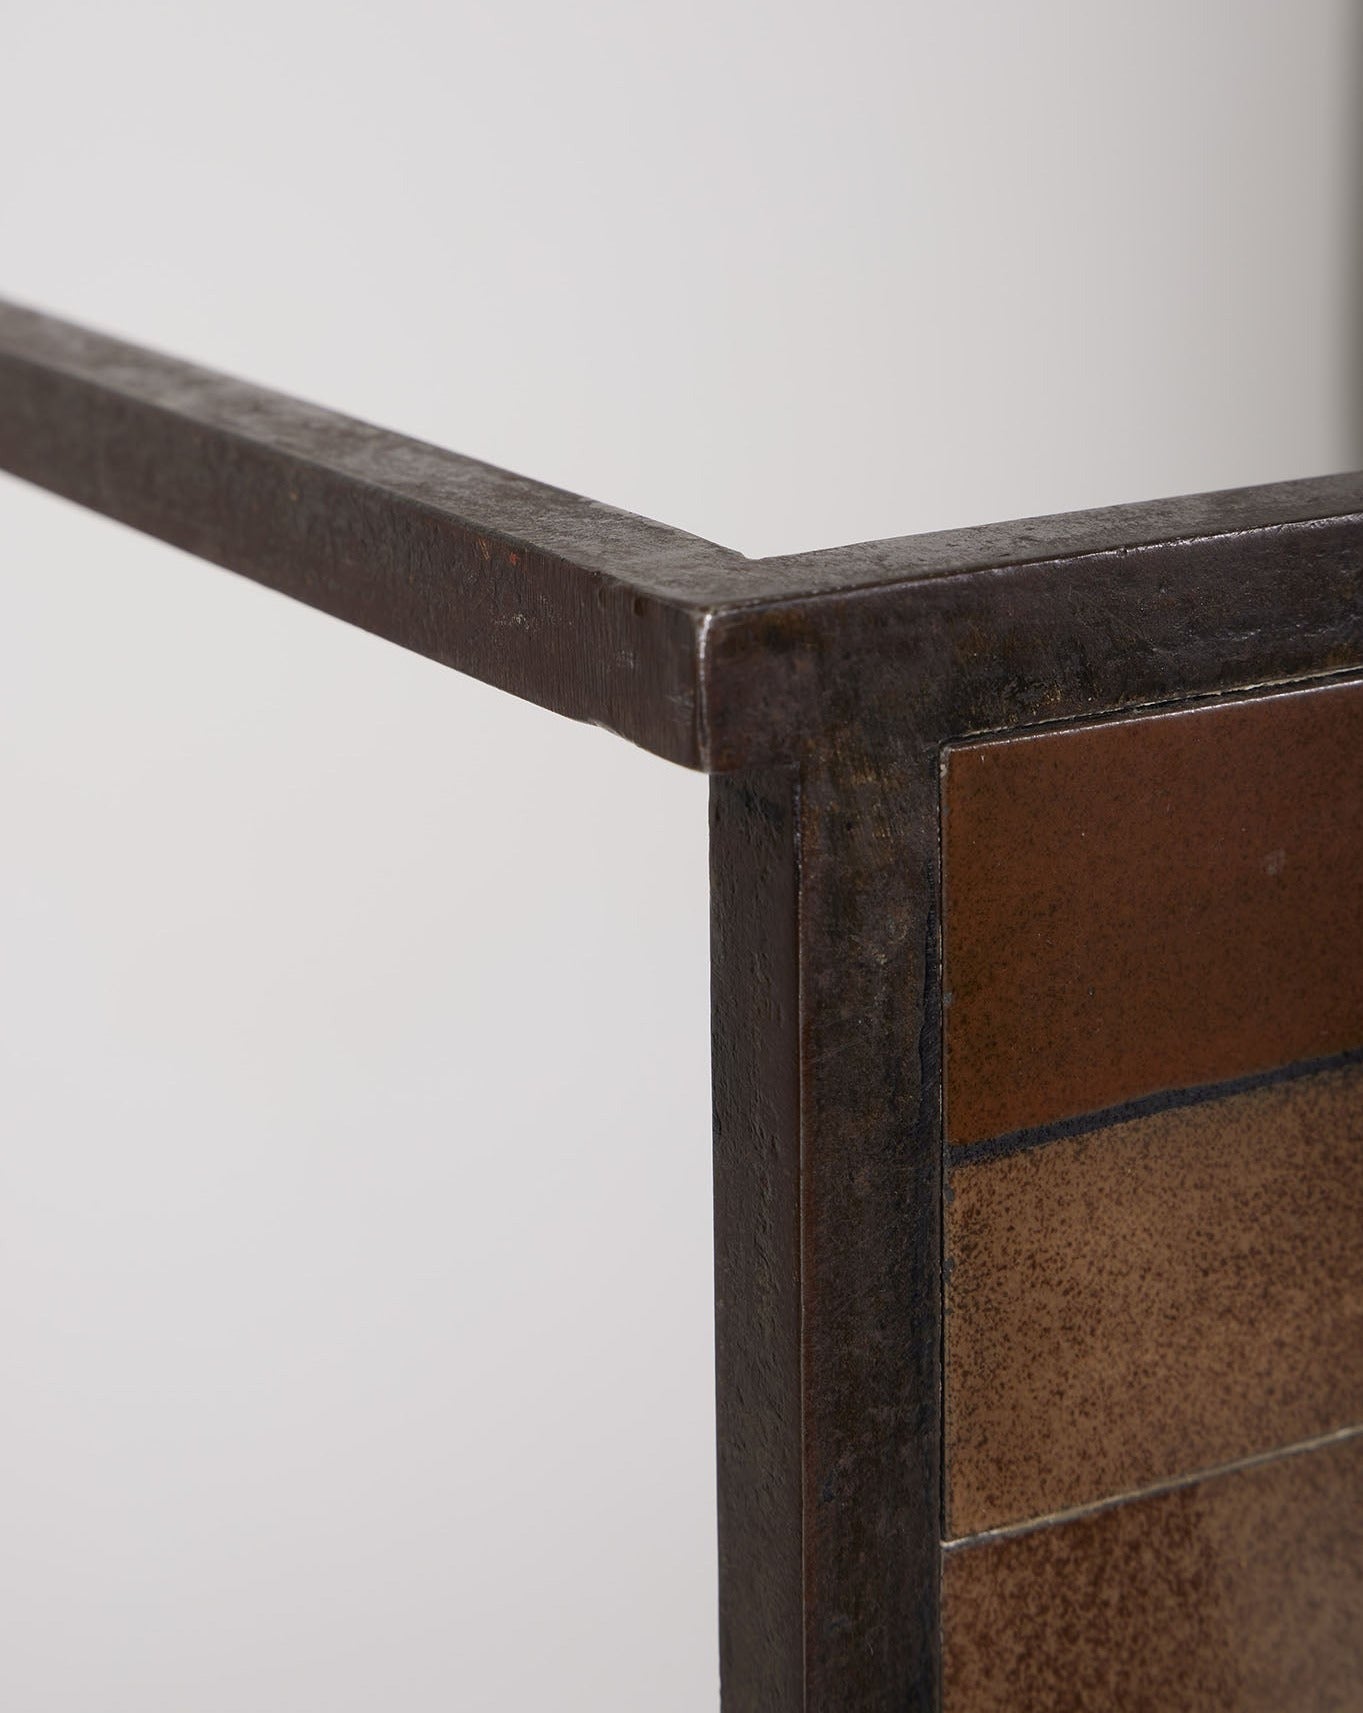 Table basse en céramique du designer Mado Jolain, années 1960. La structure en fer forgé a été réalisée par René Legrand. Le plateau en céramique est dans les tons marron et beige. Très bel état